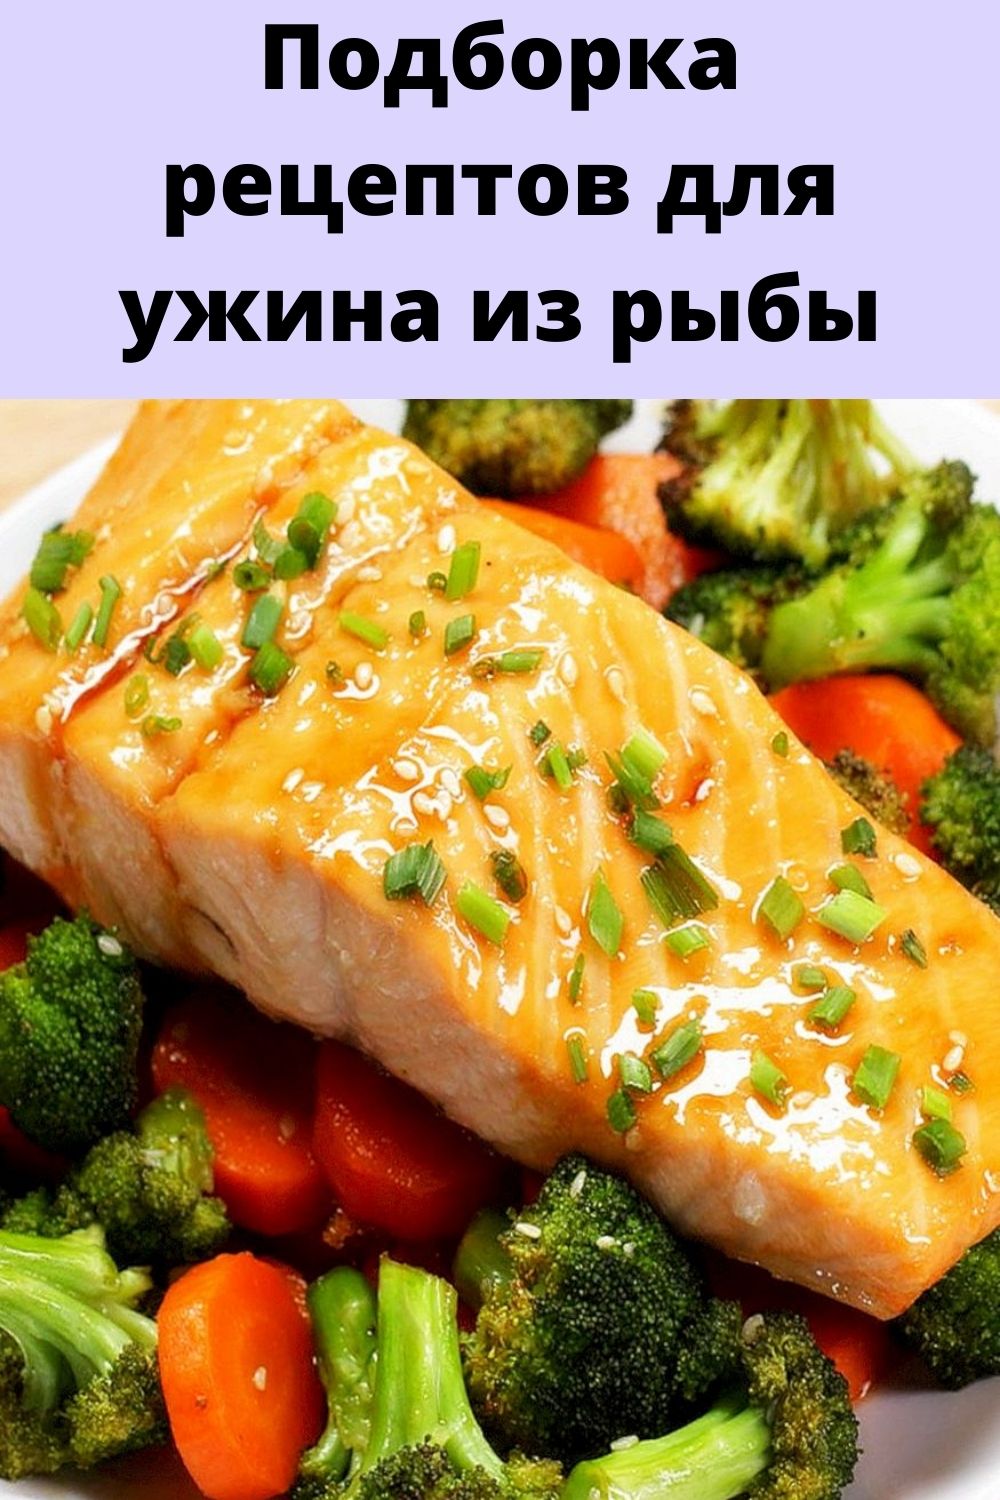 Подборка рецептов для ужина из рыбы